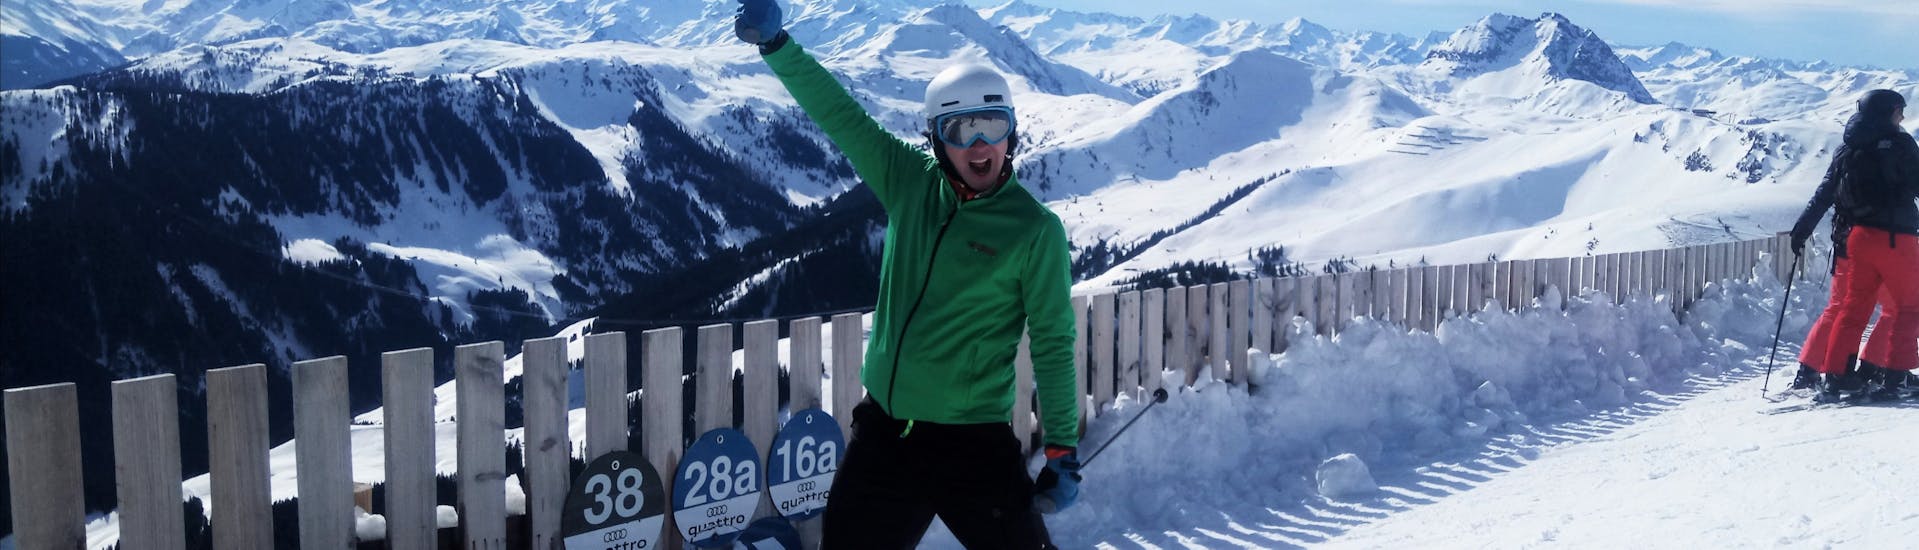 Un skieur sur les pistes des Alpes de Kitzbühel lors de sa sortie privée à Kitzbühel avec l'école de ski Skiart.